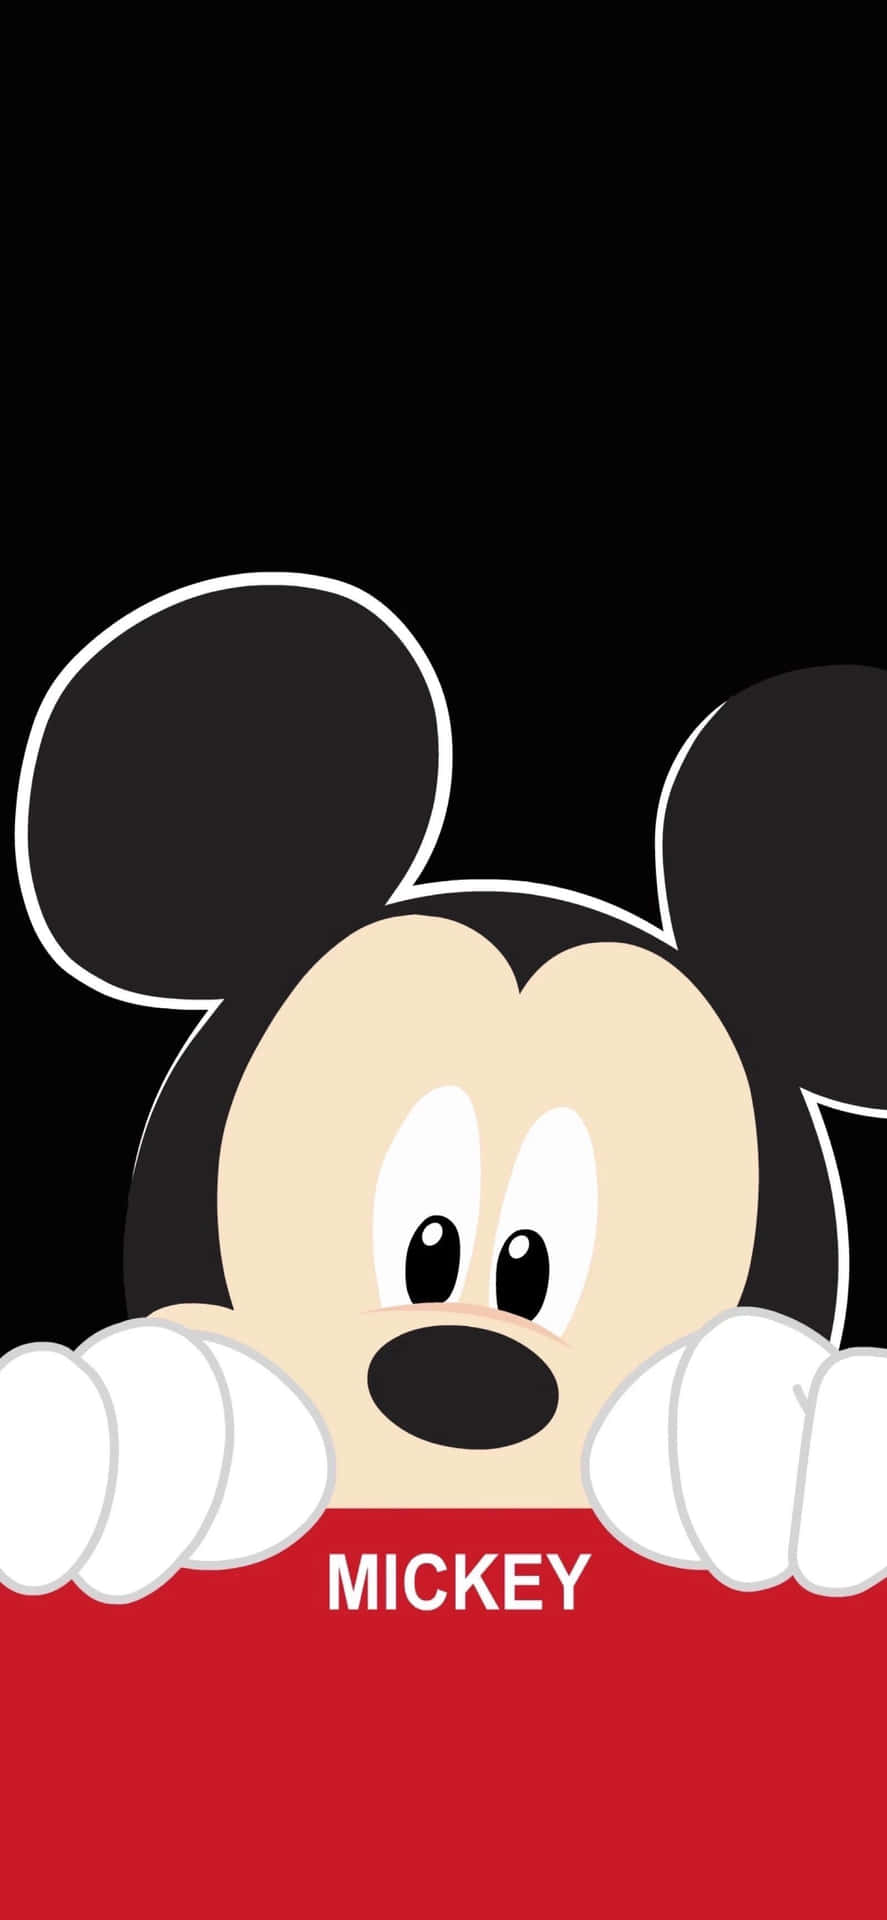 Zeigedeinen Disney-geist Mit Diesen Ikonischen Mickey Mouse Ohren! Wallpaper